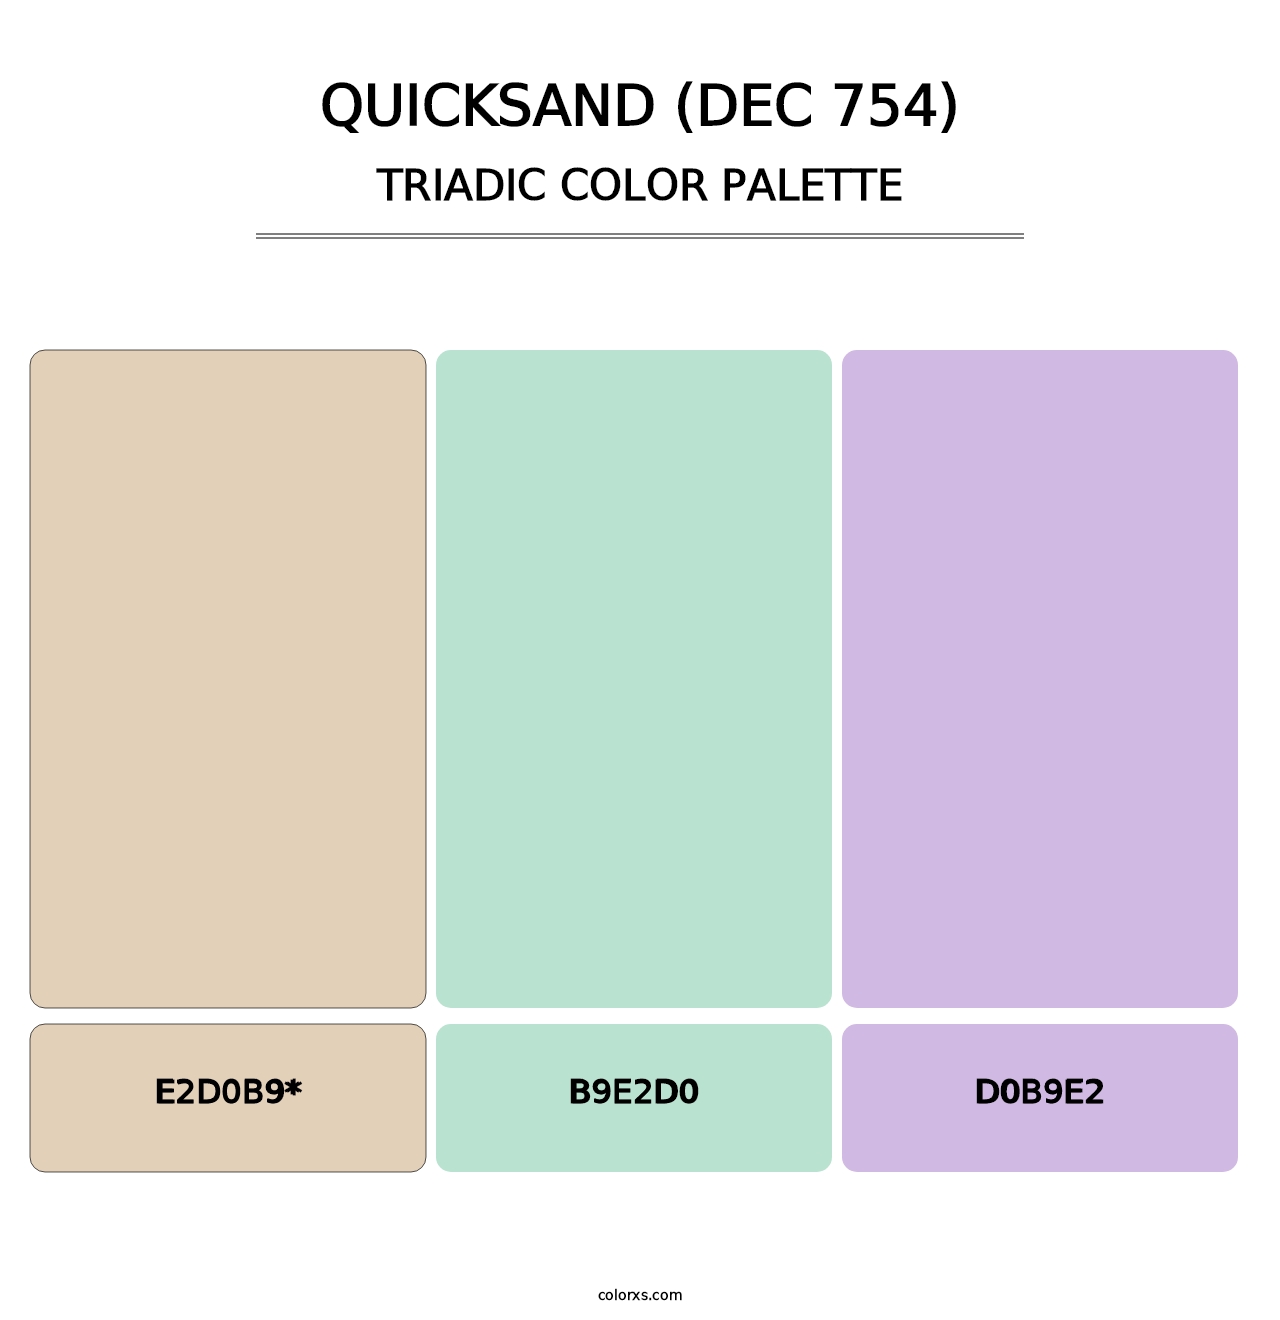 Quicksand (DEC 754) - Triadic Color Palette